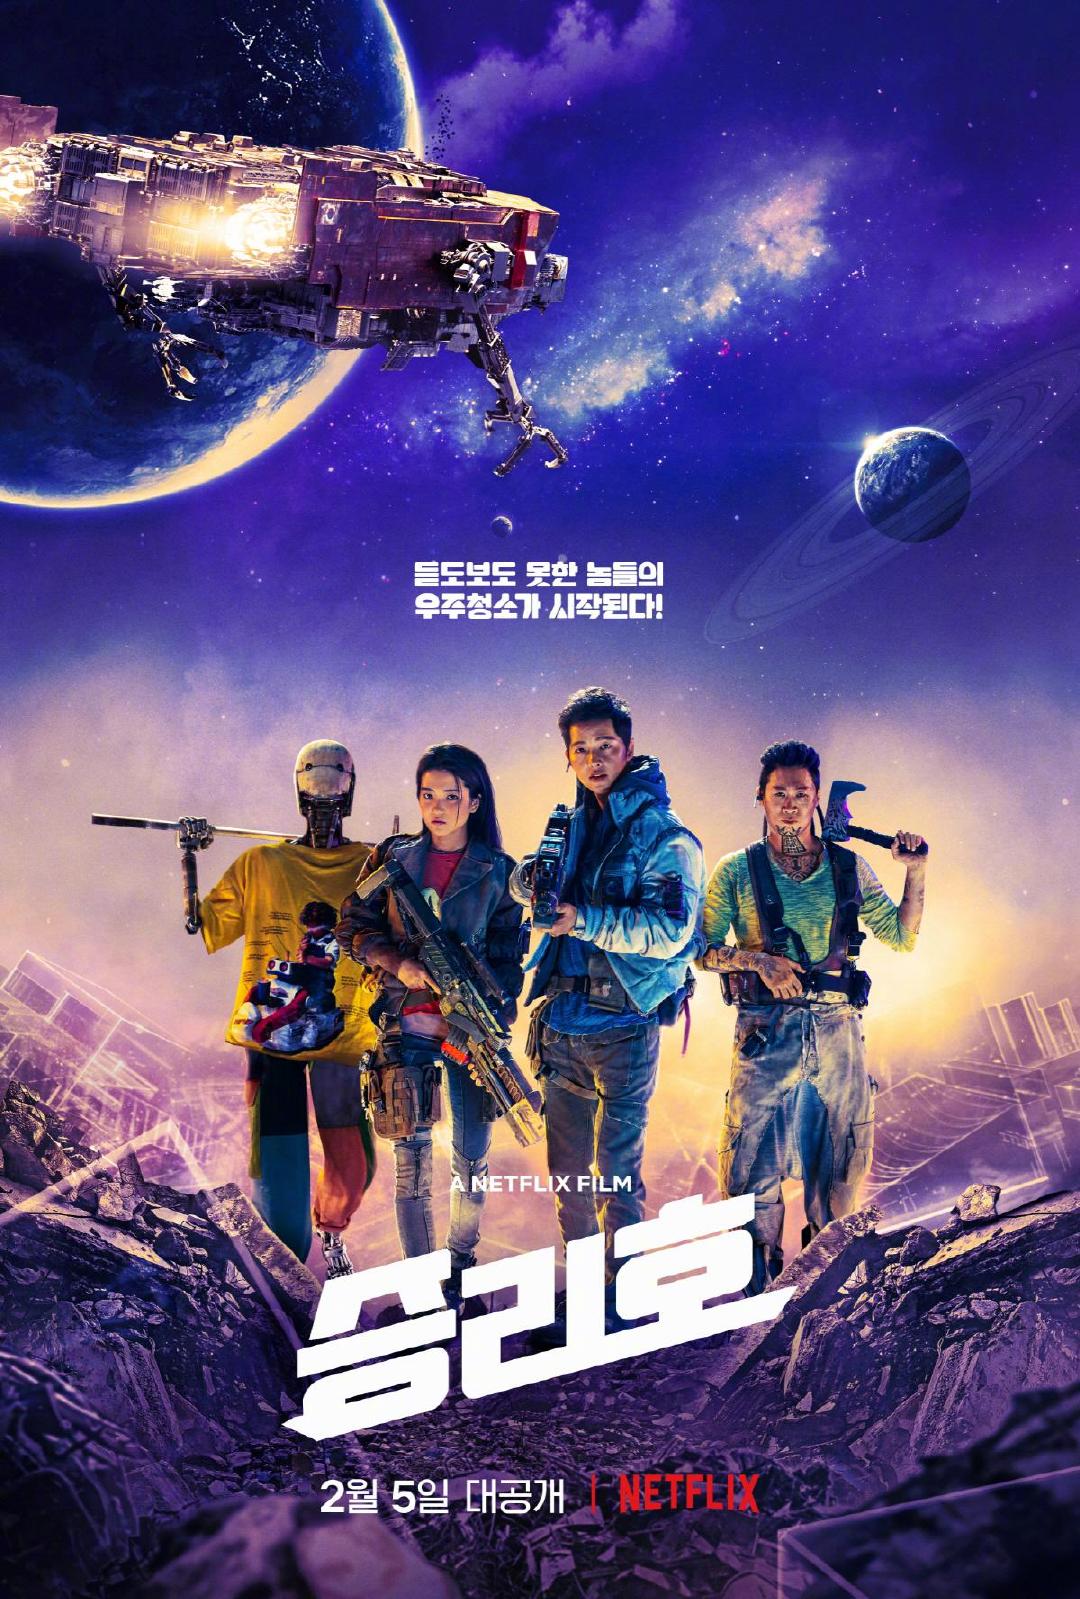 好莱坞将翻拍美版韩国太空科幻片《胜利号》